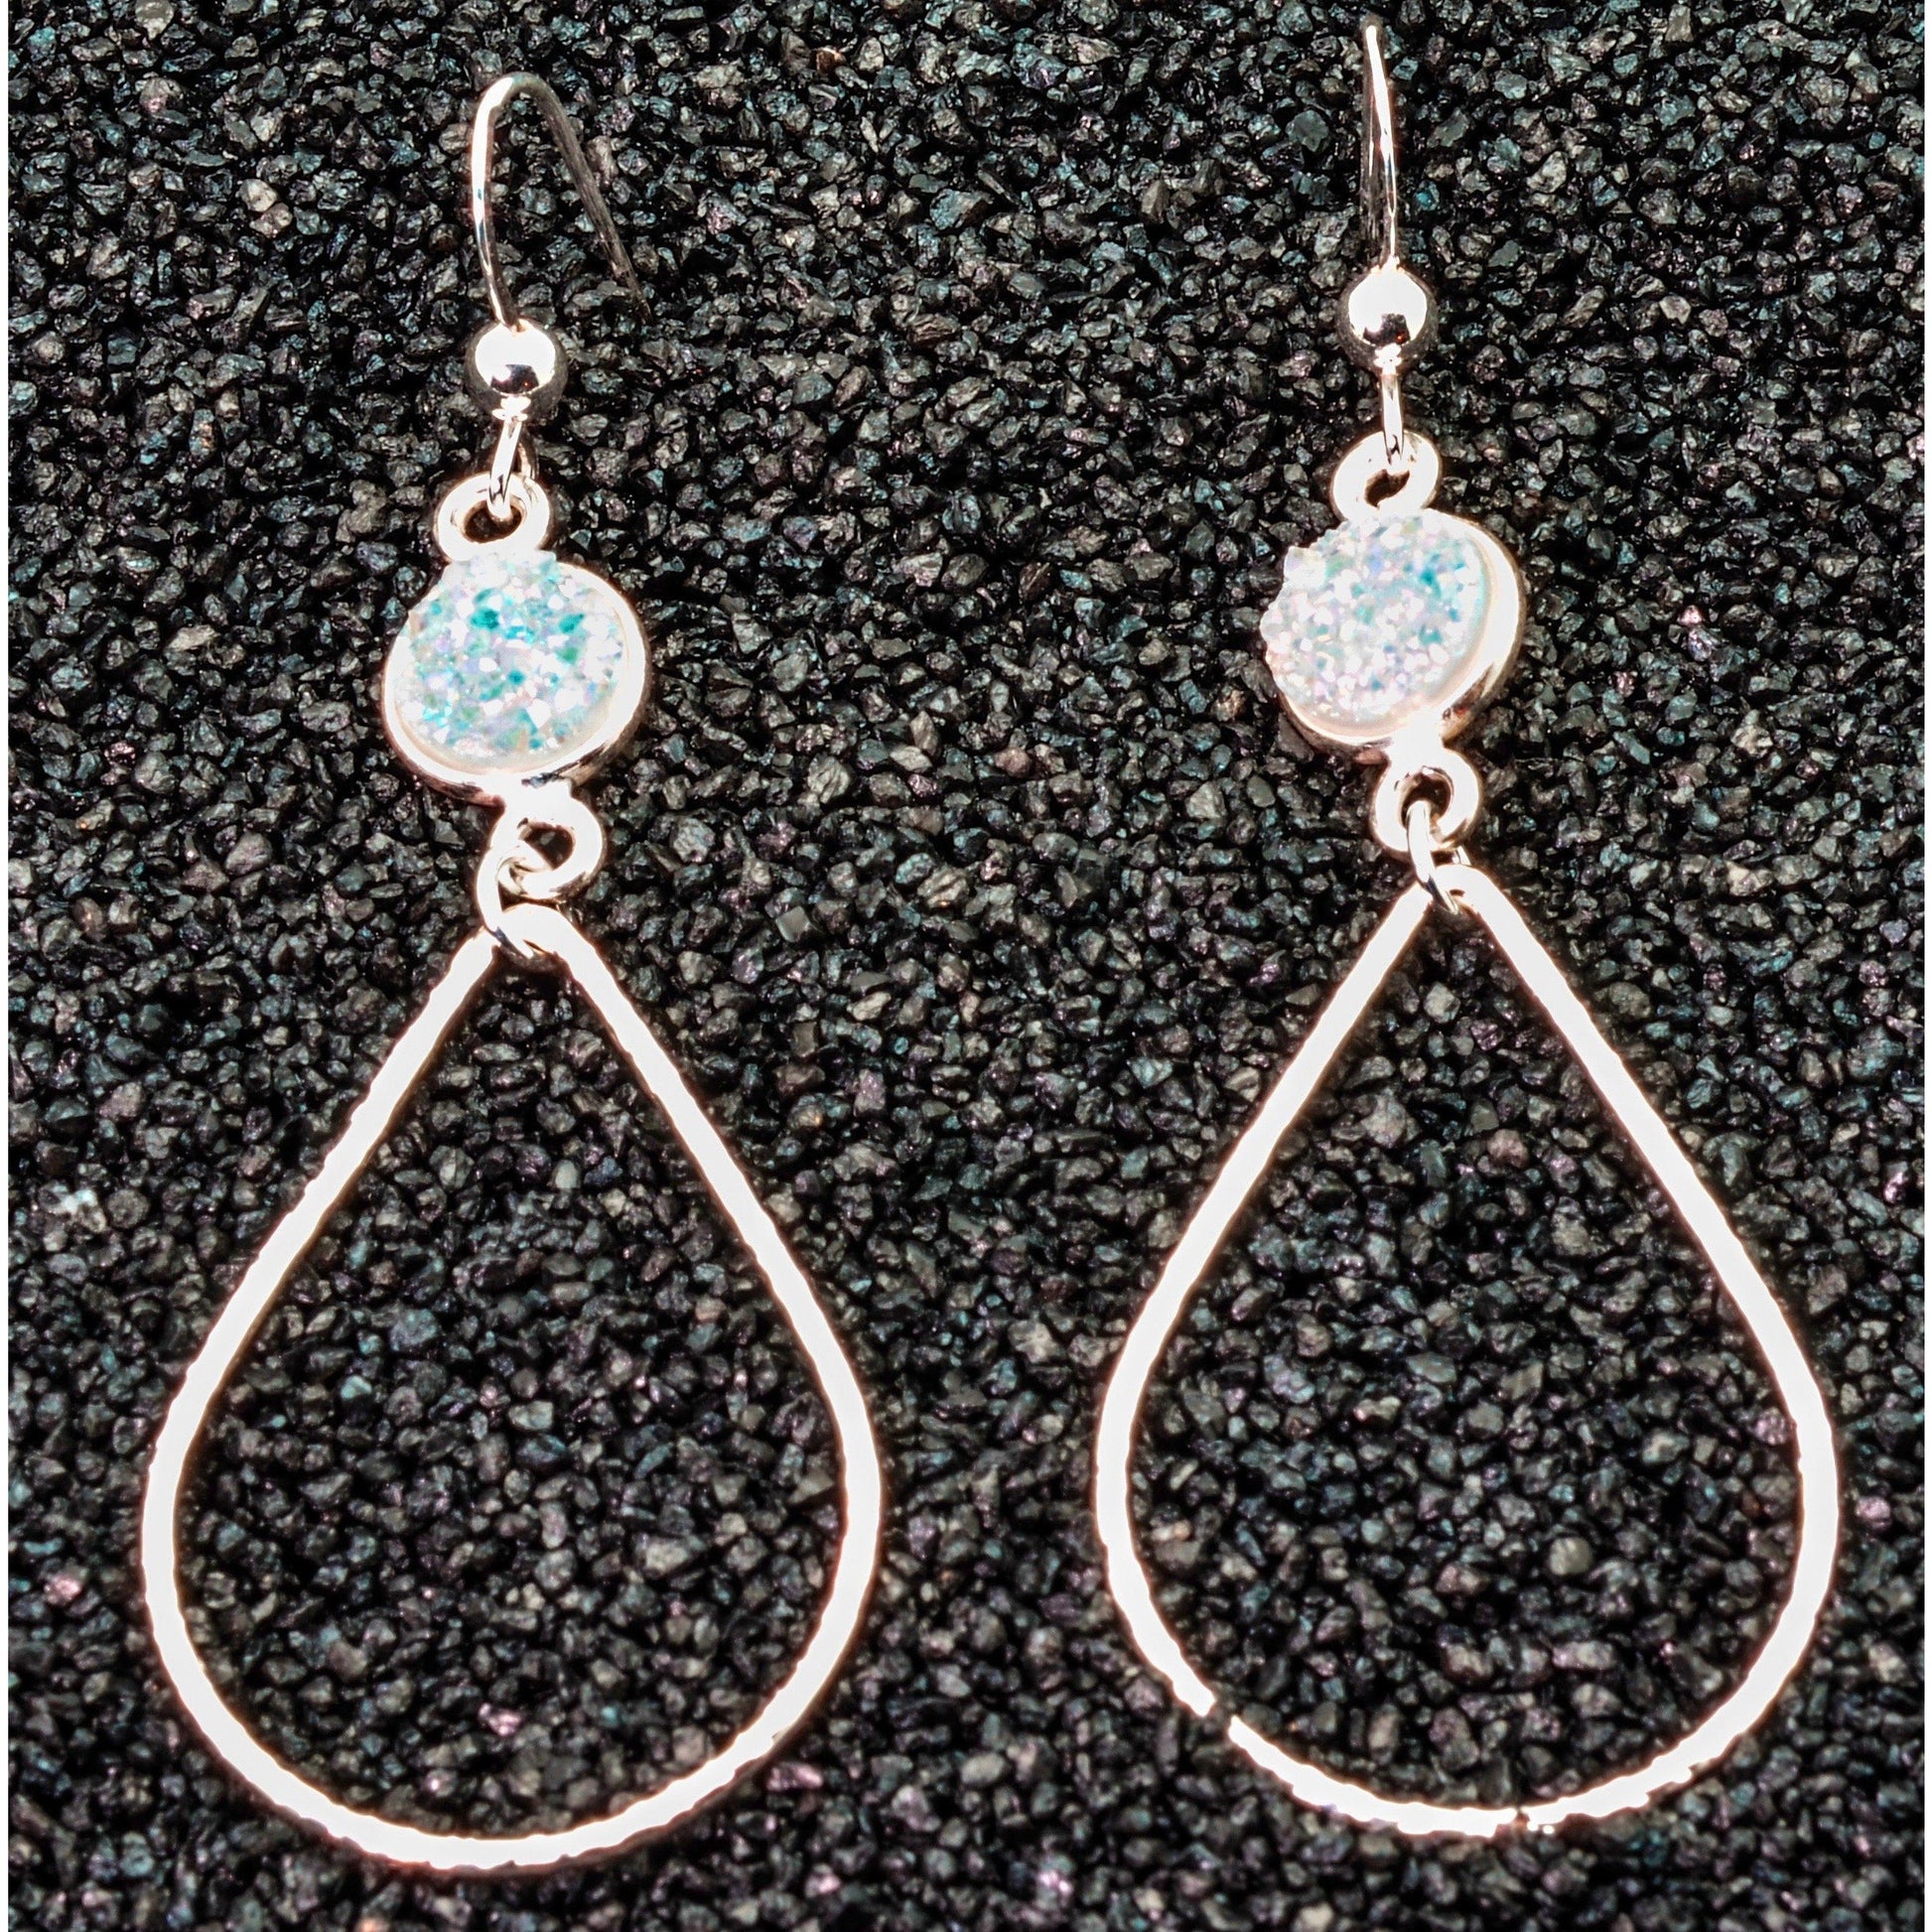 Modern Design Sterling Silver Druzy Quartz Earrings, 925 Fine Jewelry - PCH Rings